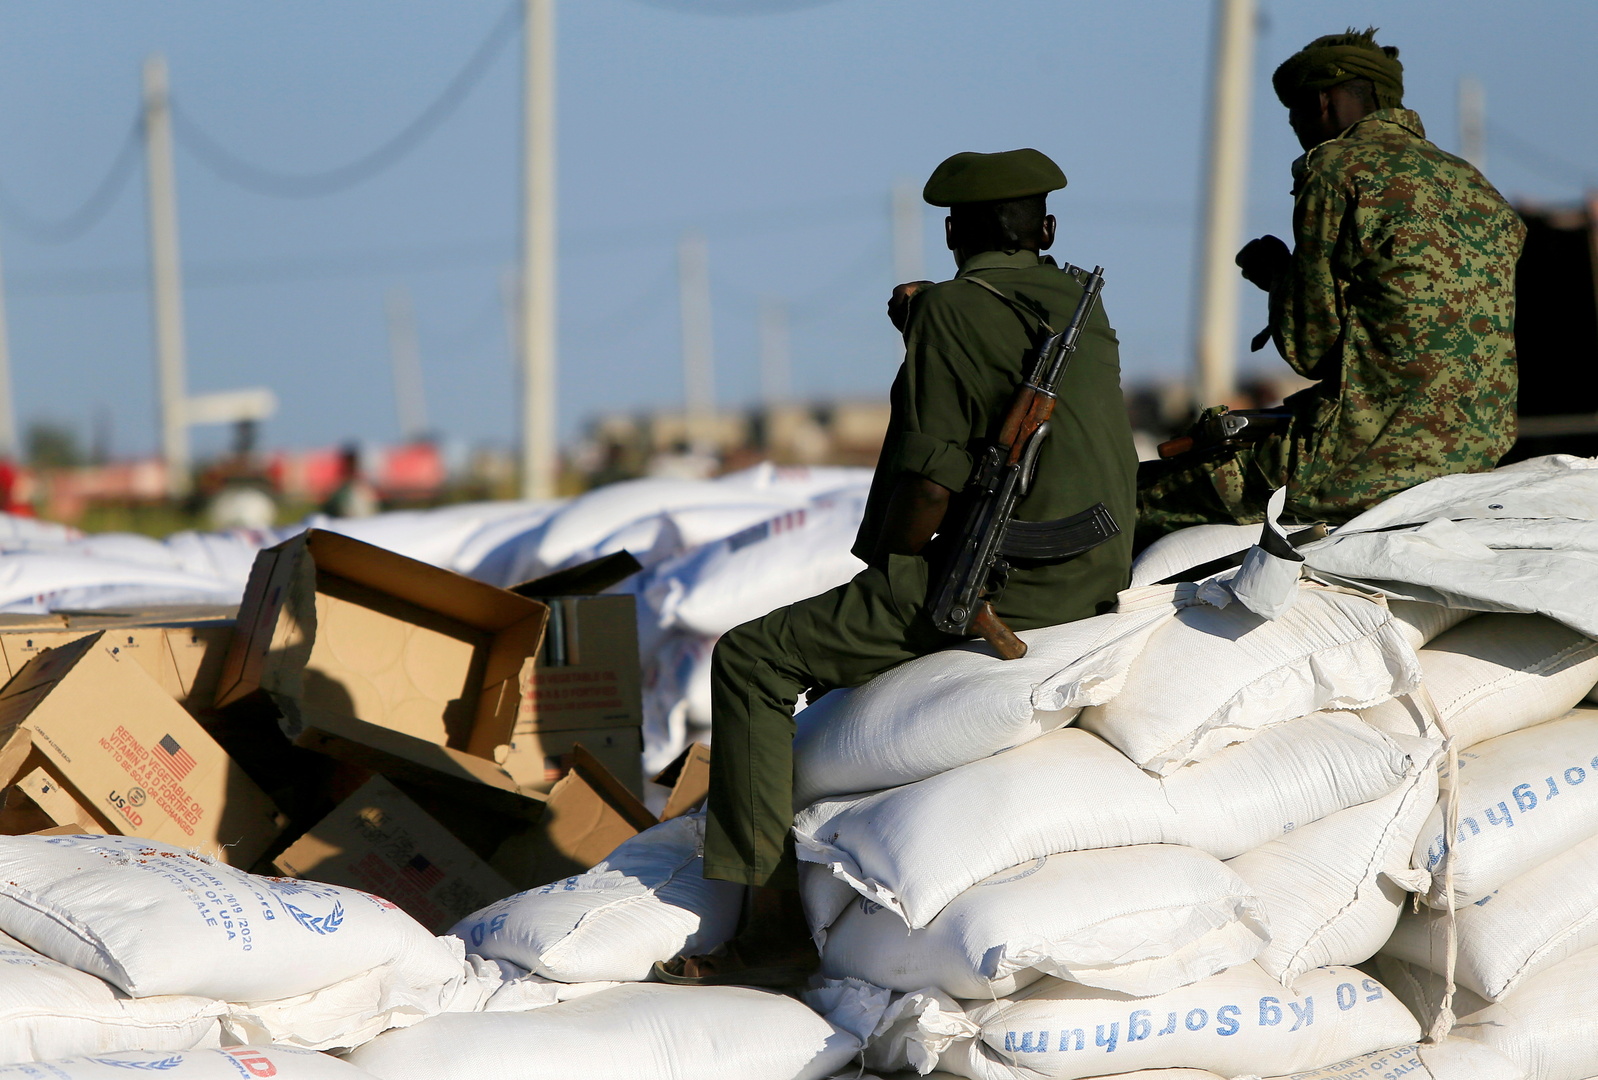 مراسلنا: الجيش السوداني يرد على قصف مدفعي إثيوبي استهدف مناطق حدودية فجر اليوم